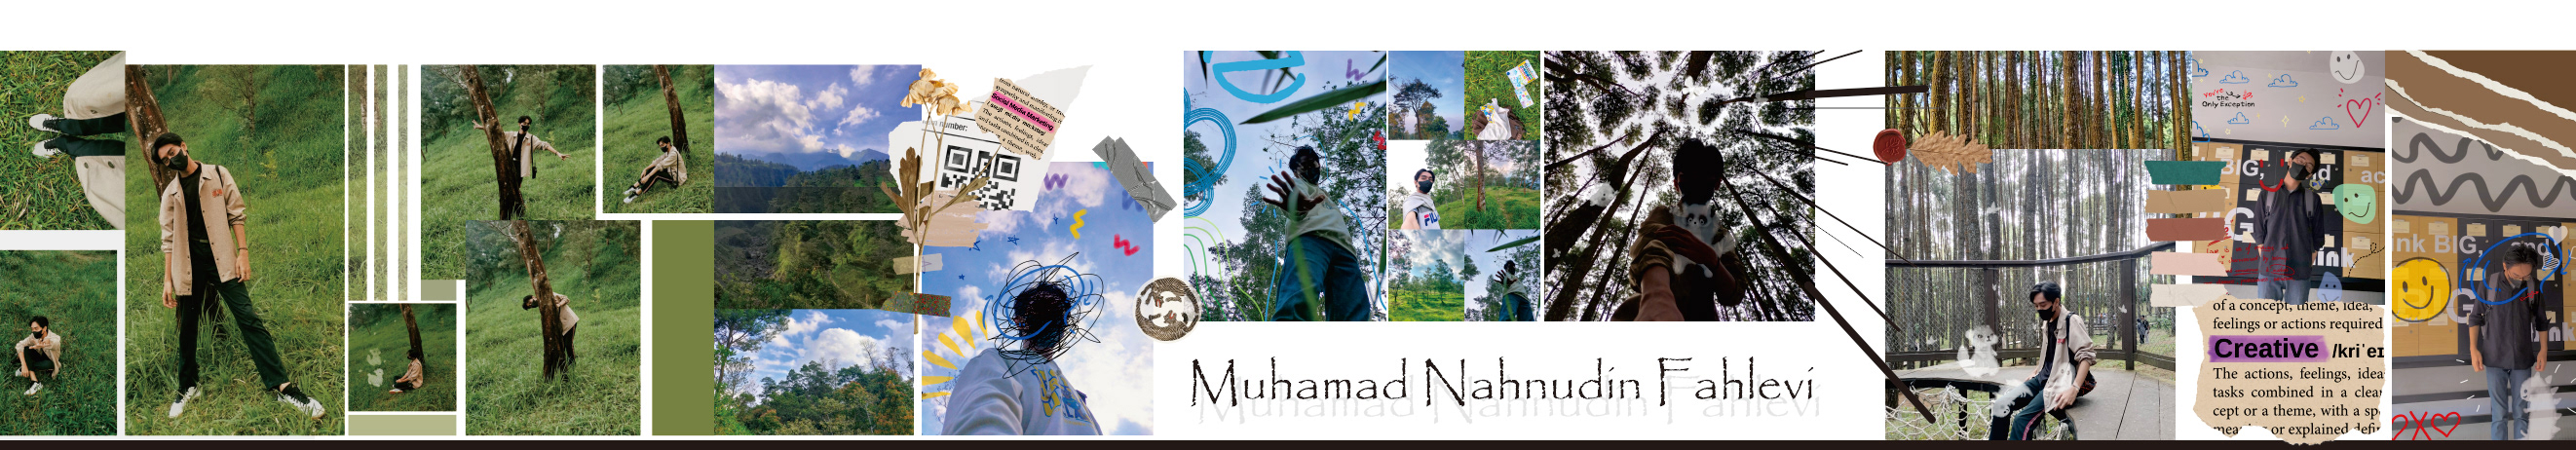 MUHAMAD FAHLEVI's profile banner